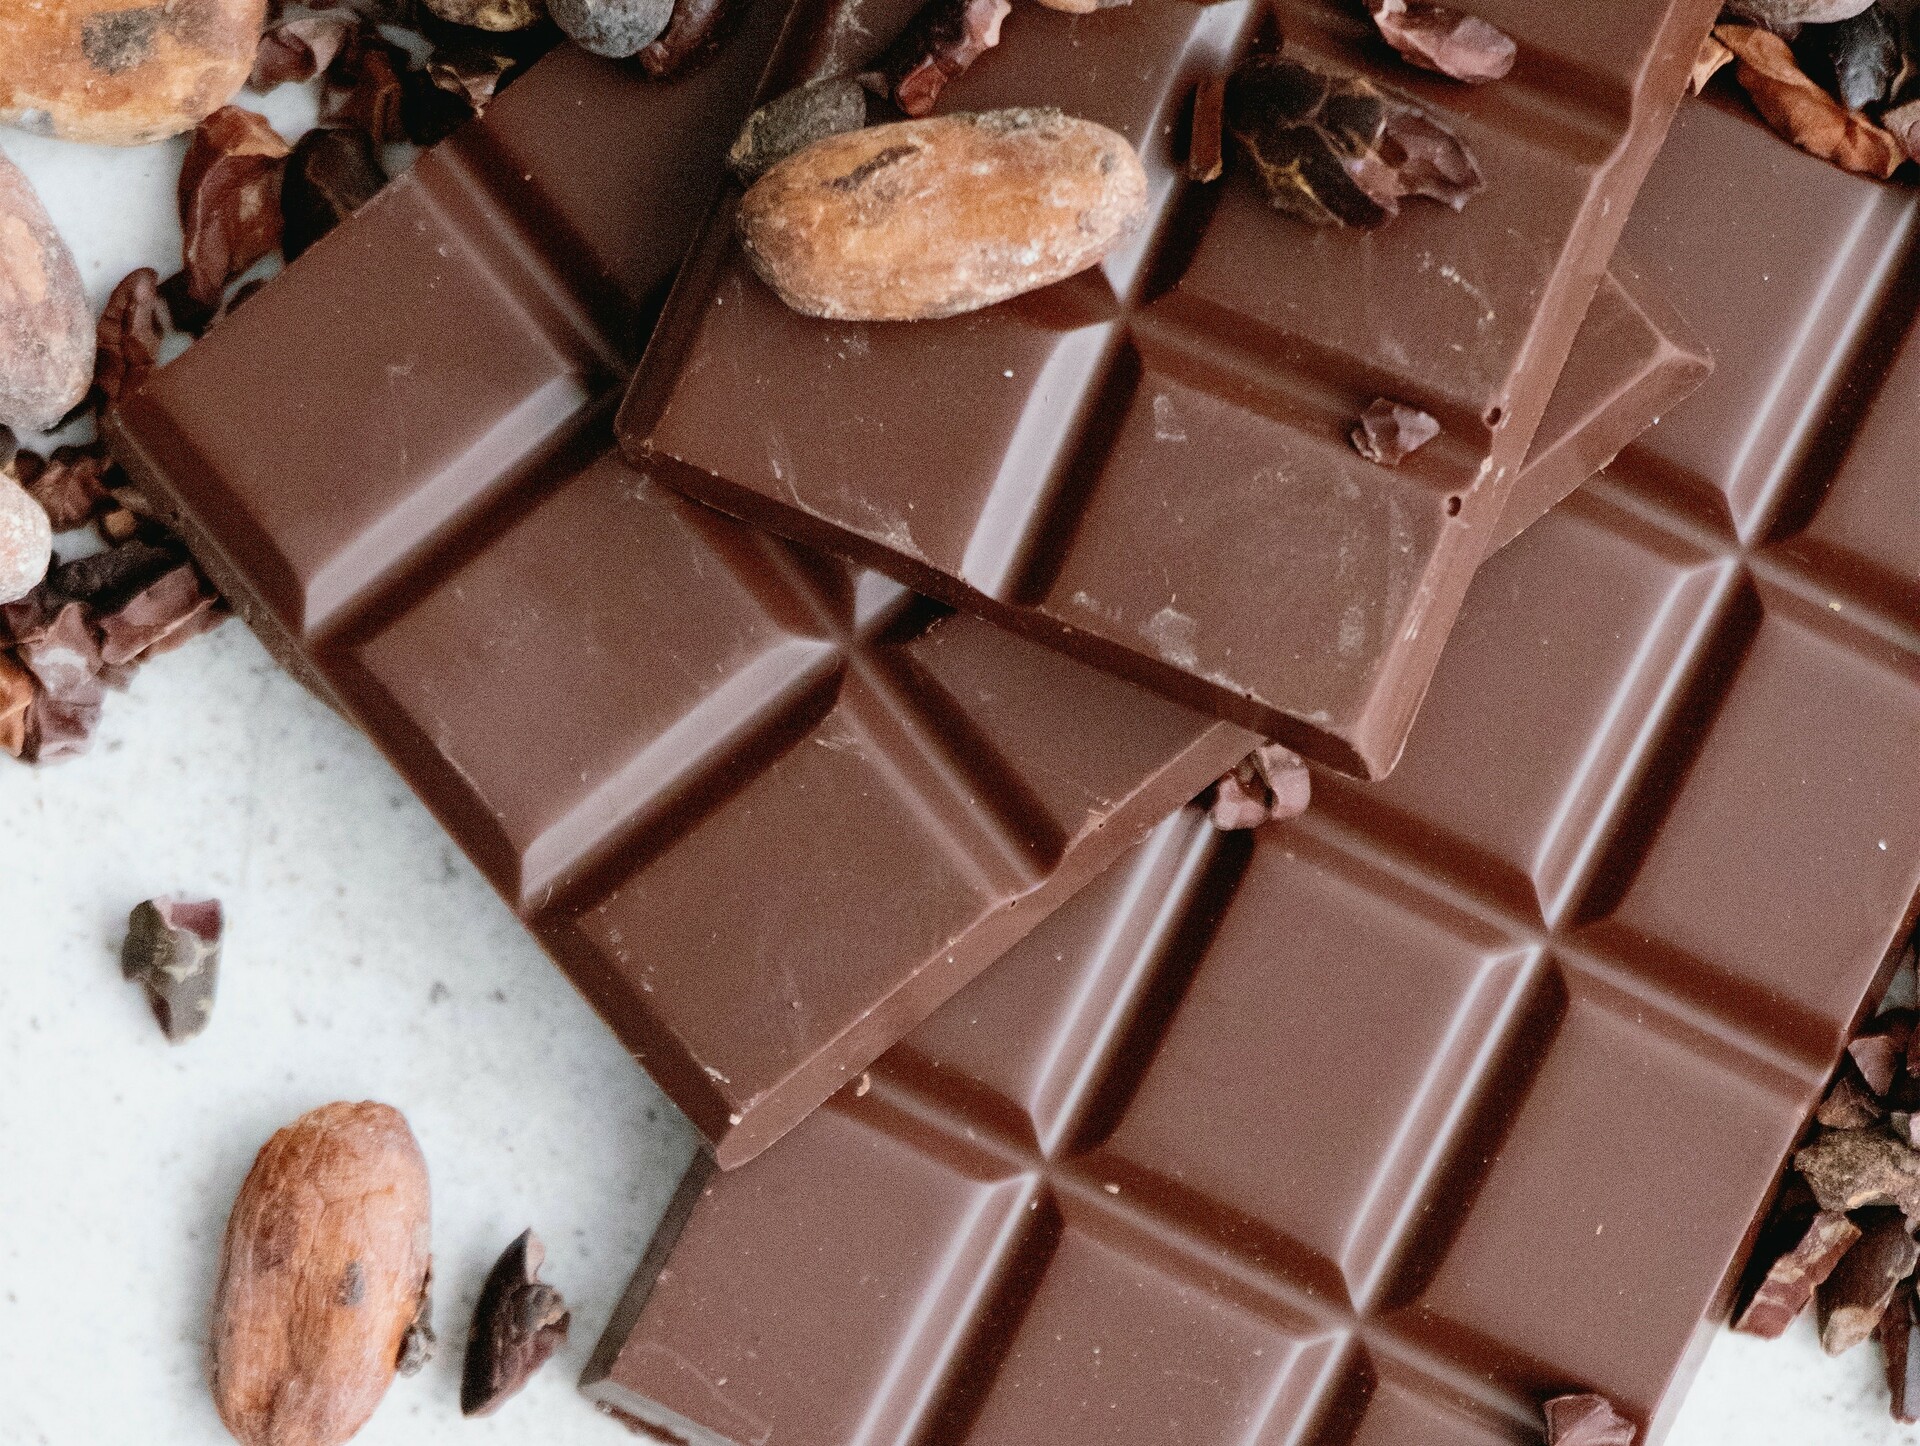 Industria del chocolate y confitería repunta tras pandemia del covid-19